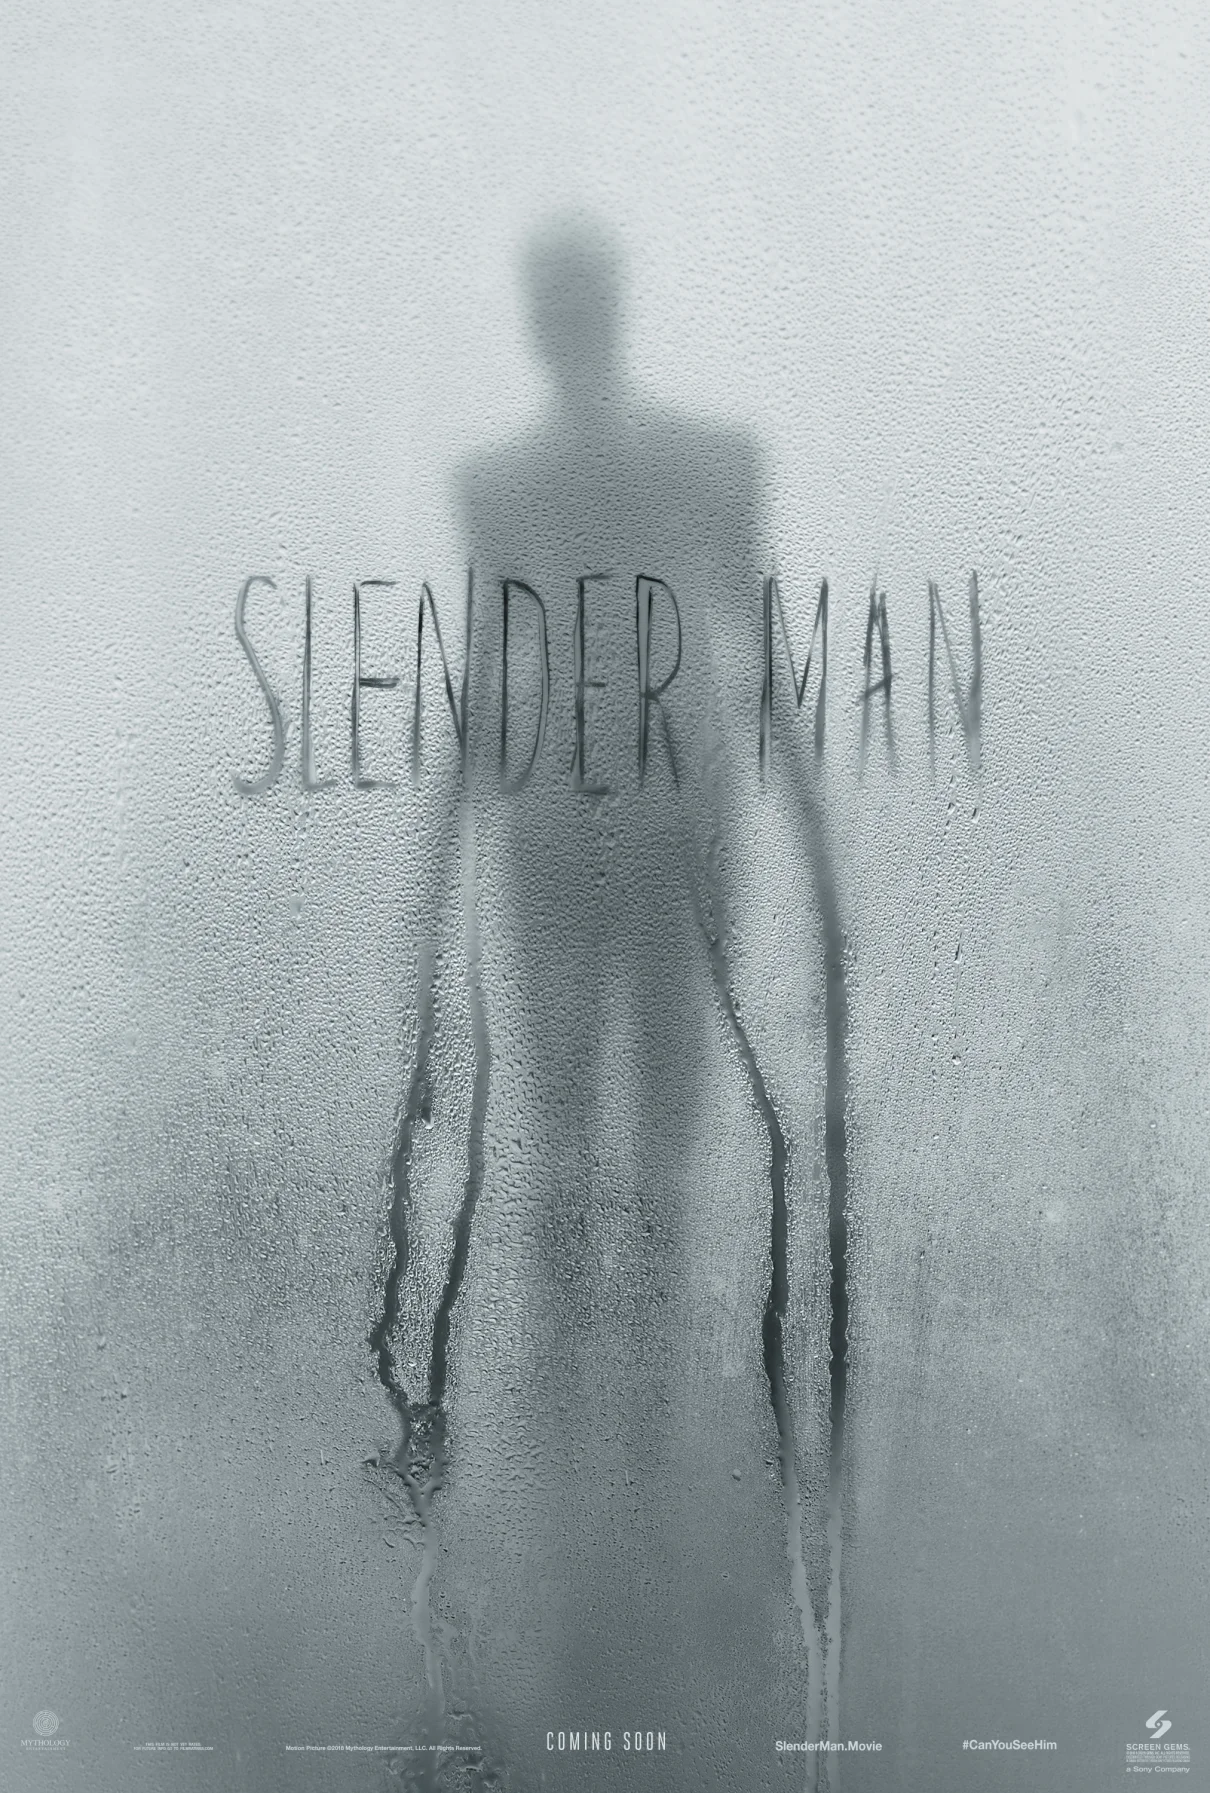 А вот и худший хоррор 2018-го! Первый трейлер кошмарного Slender Man от Sony Pictures - фото 2